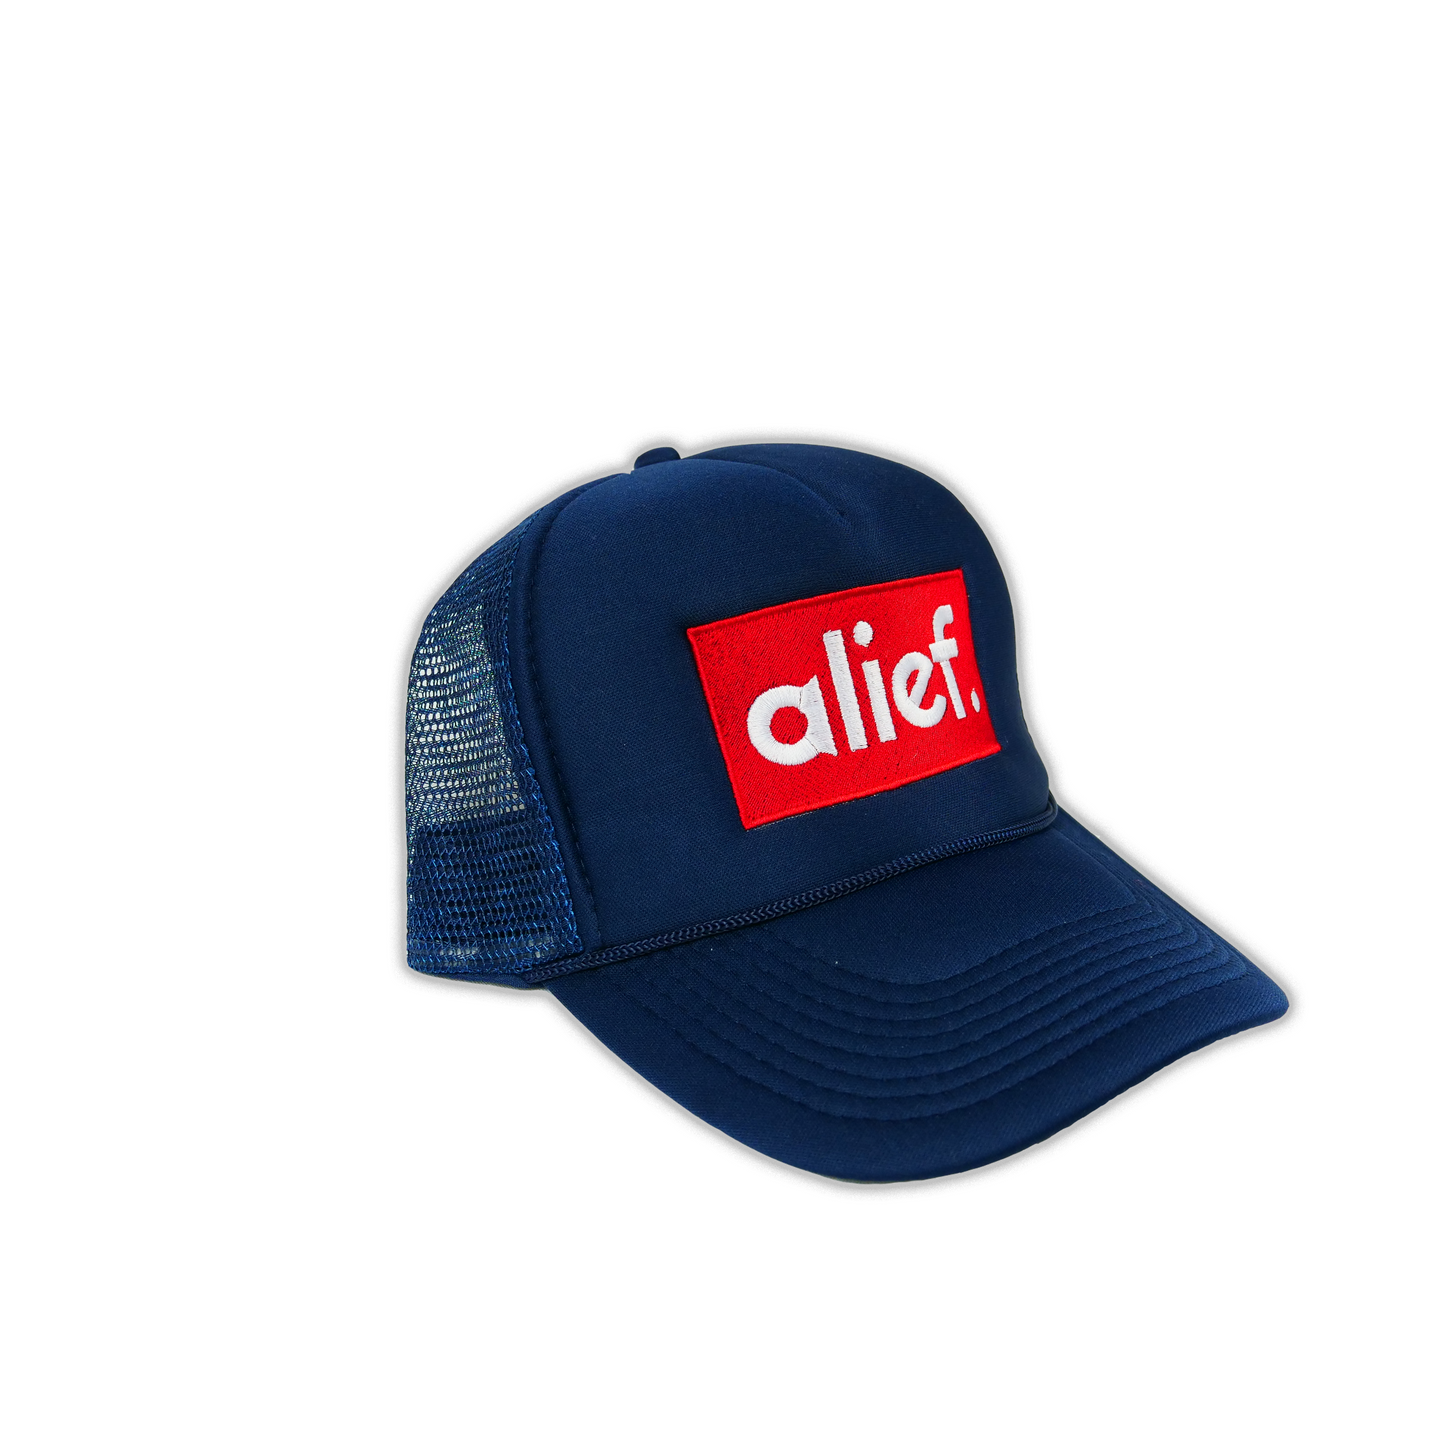 Alief Red Box Trucker Hat - Navy Blue